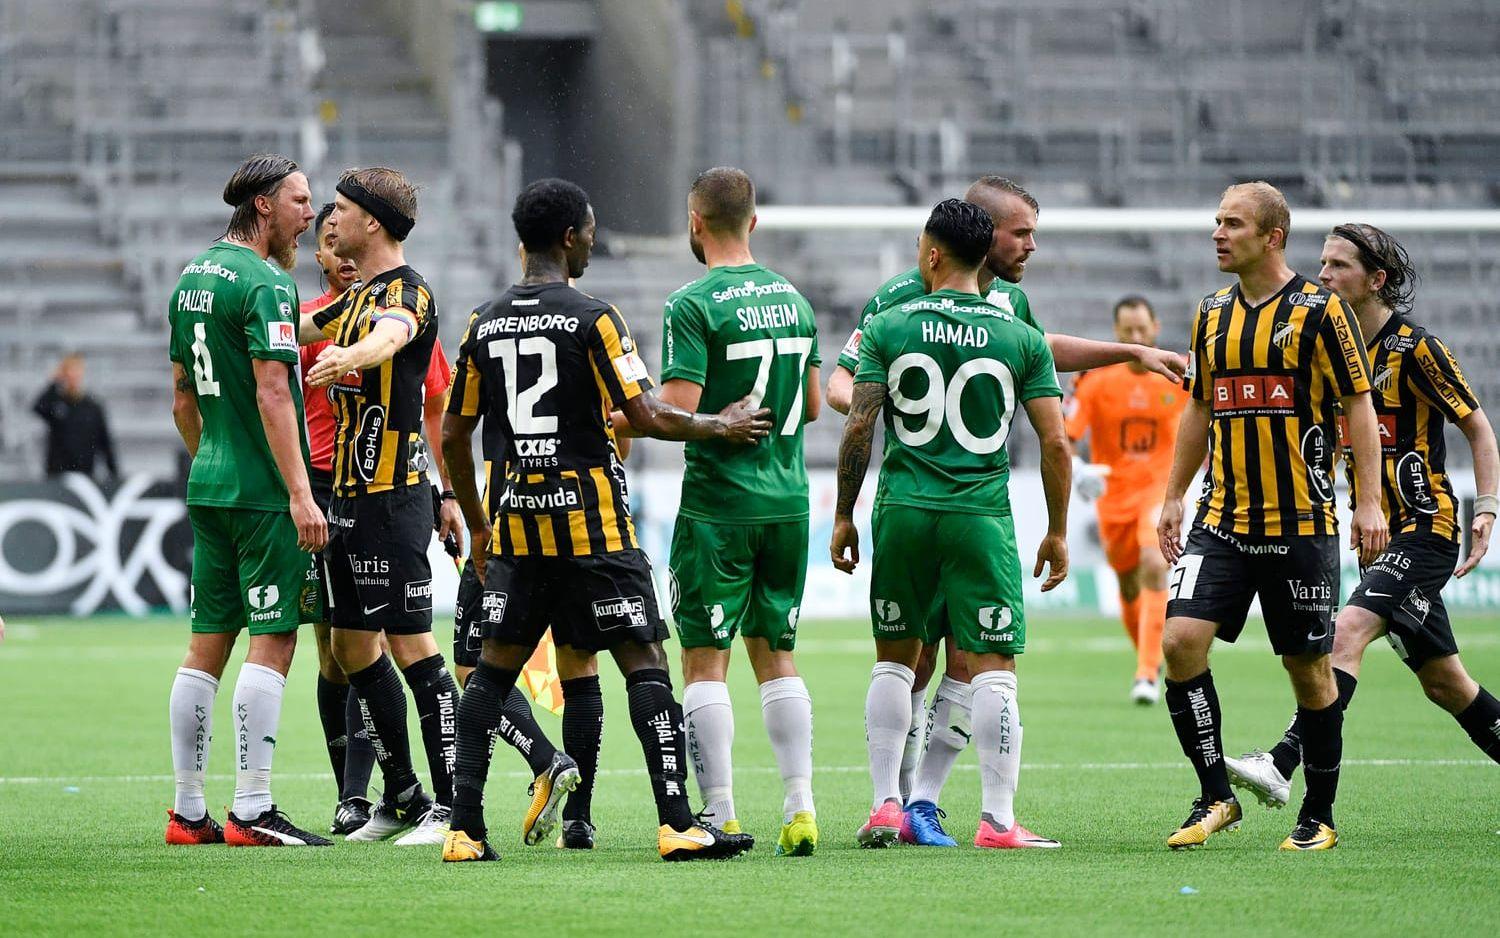 Hammarbys kvitteringsmål ledde till heta diskussioner mellan spelarna. Foto: Bildbyrån